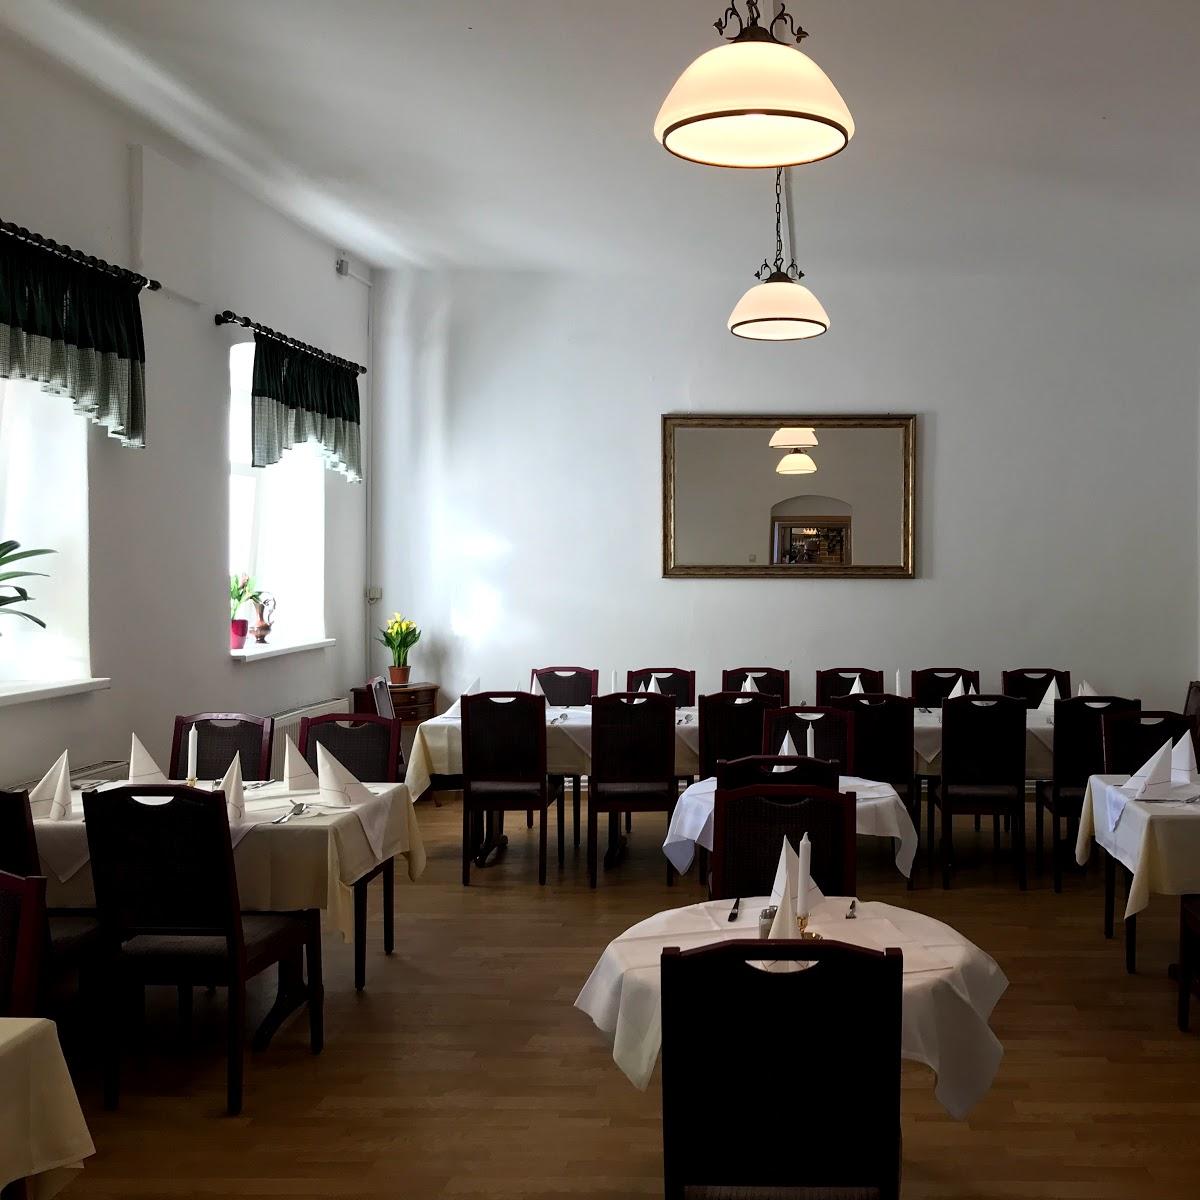 Restaurant "Zur Grenze Il Confine" in Bad Muskau